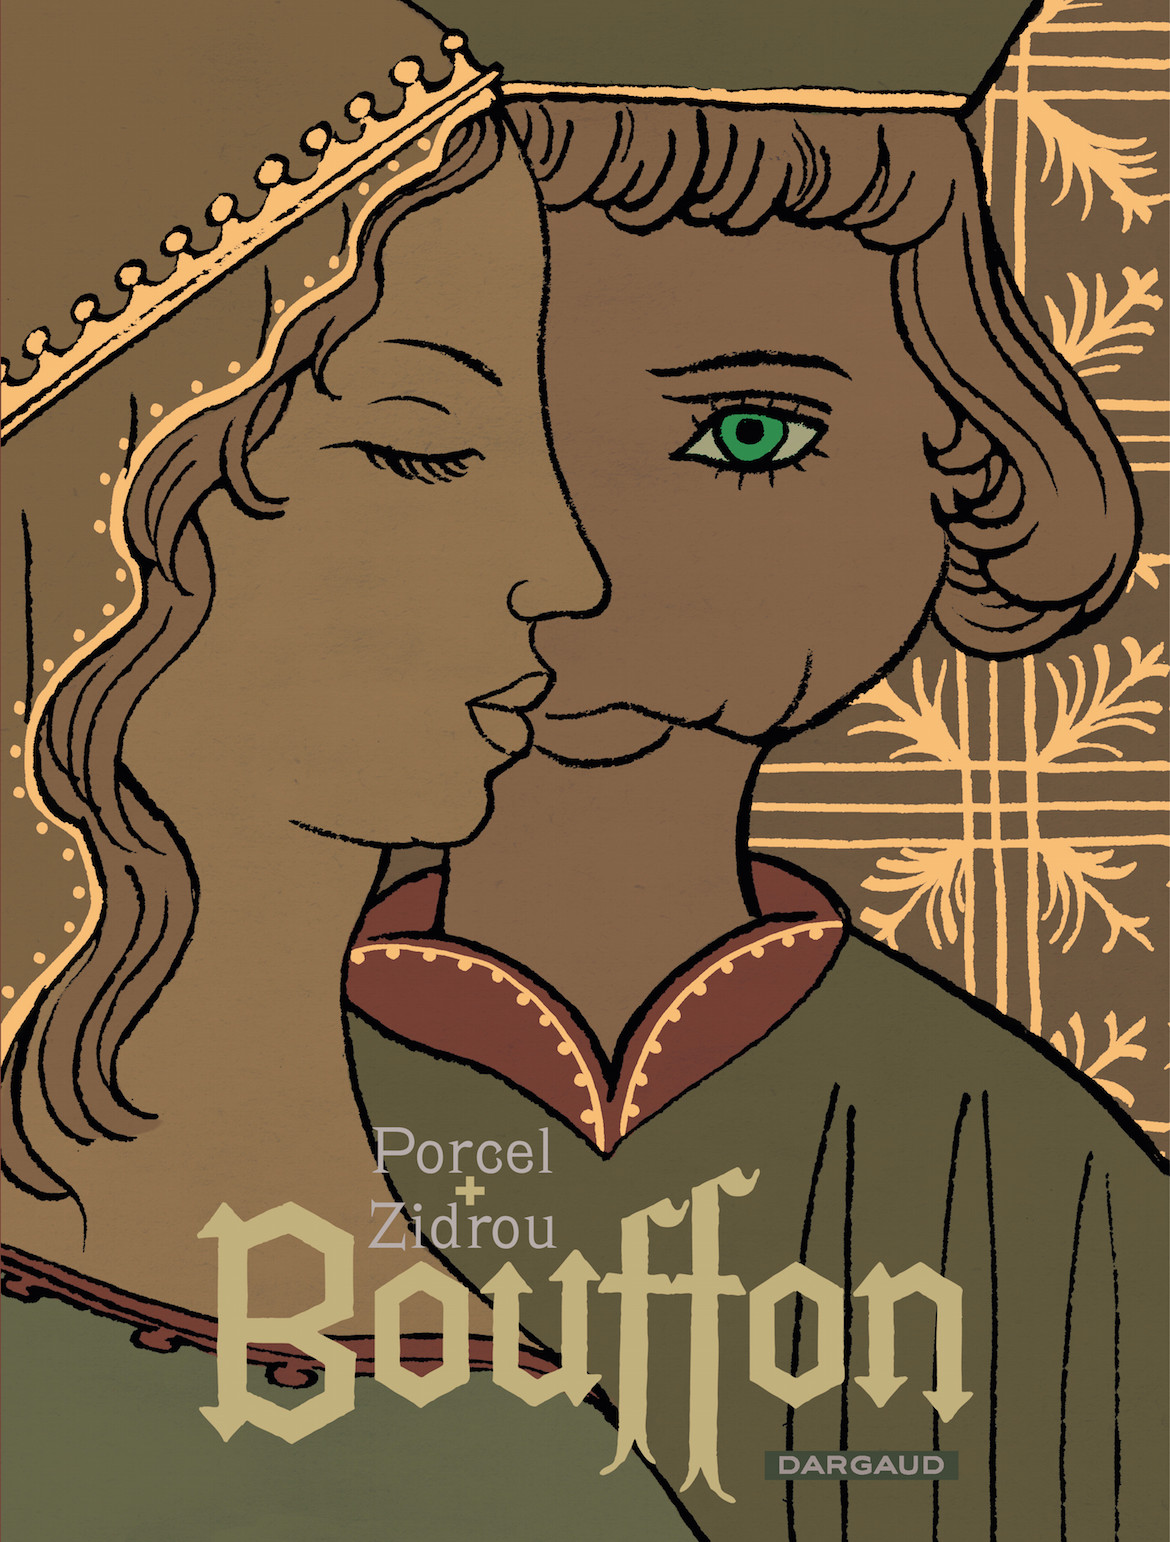 Preview : découvrez les premières planches de Bouffon, une BD de Zidrou et Francis Porcel (Dargaud)